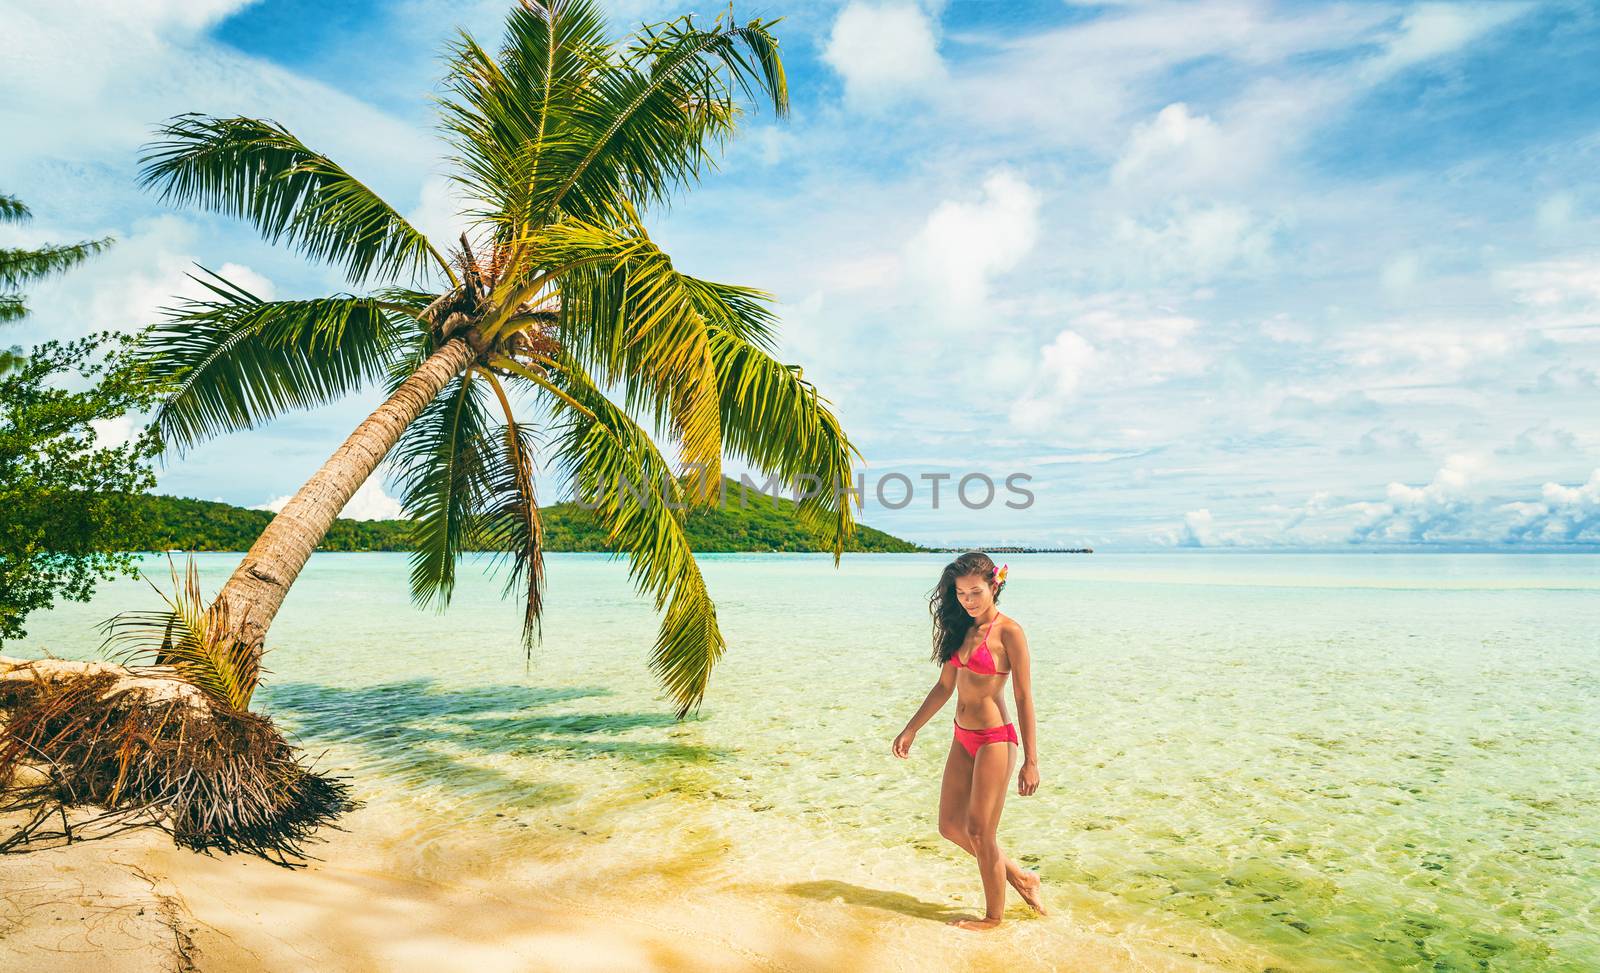 Luxury beach vacation Tahiti Bora Bora bikini woman swimming in paradise getaway destination. Beautiful Asian swimsuit model relaxing by Maridav